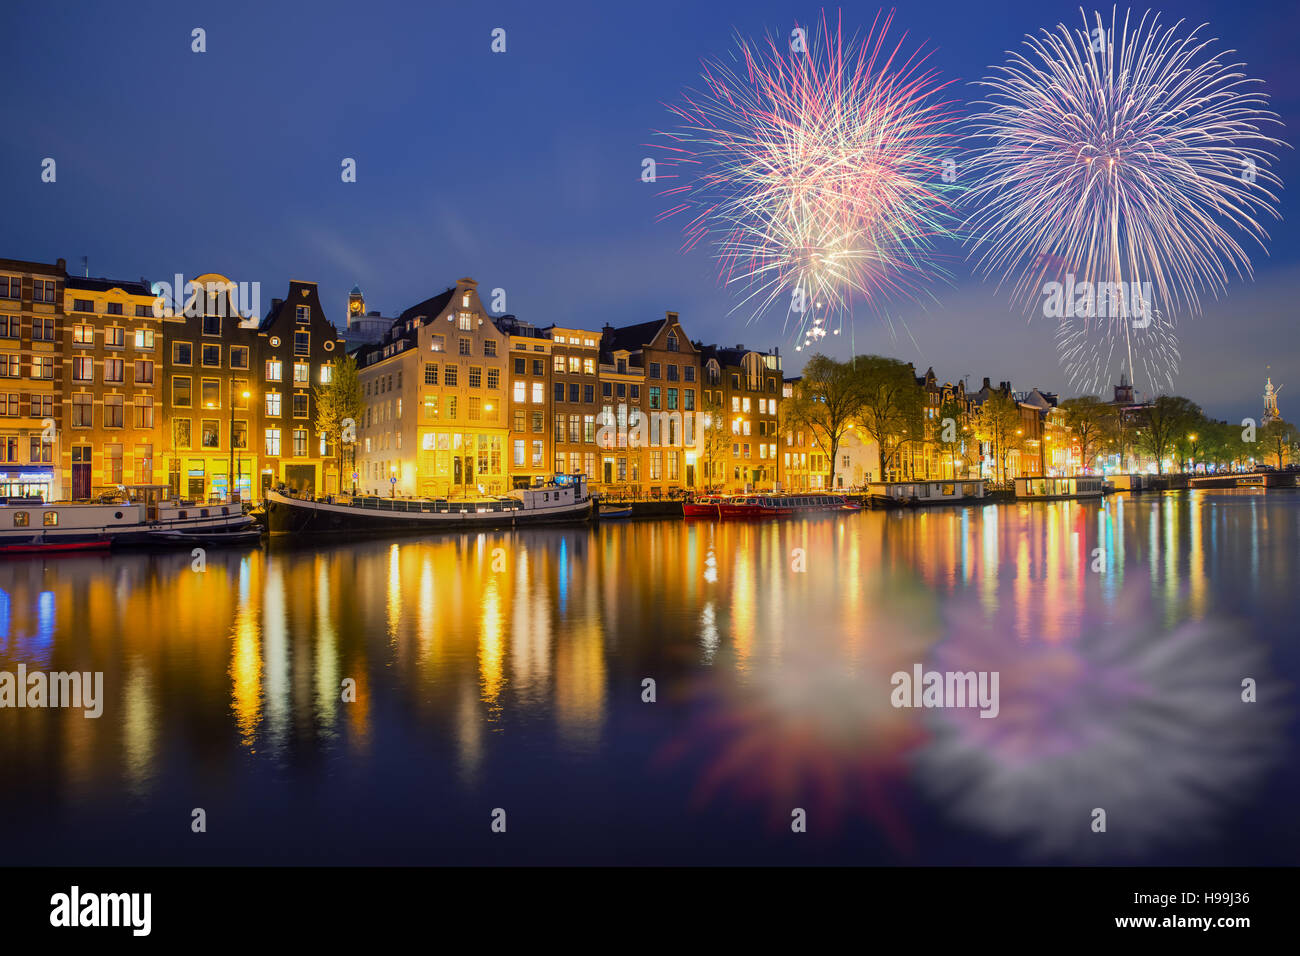 Vue sur la ville de nuit Amsterdam Pays-Bas maisons traditionnelles avec Fireworks nouvel an à Amsterdam, Pays-Bas Banque D'Images